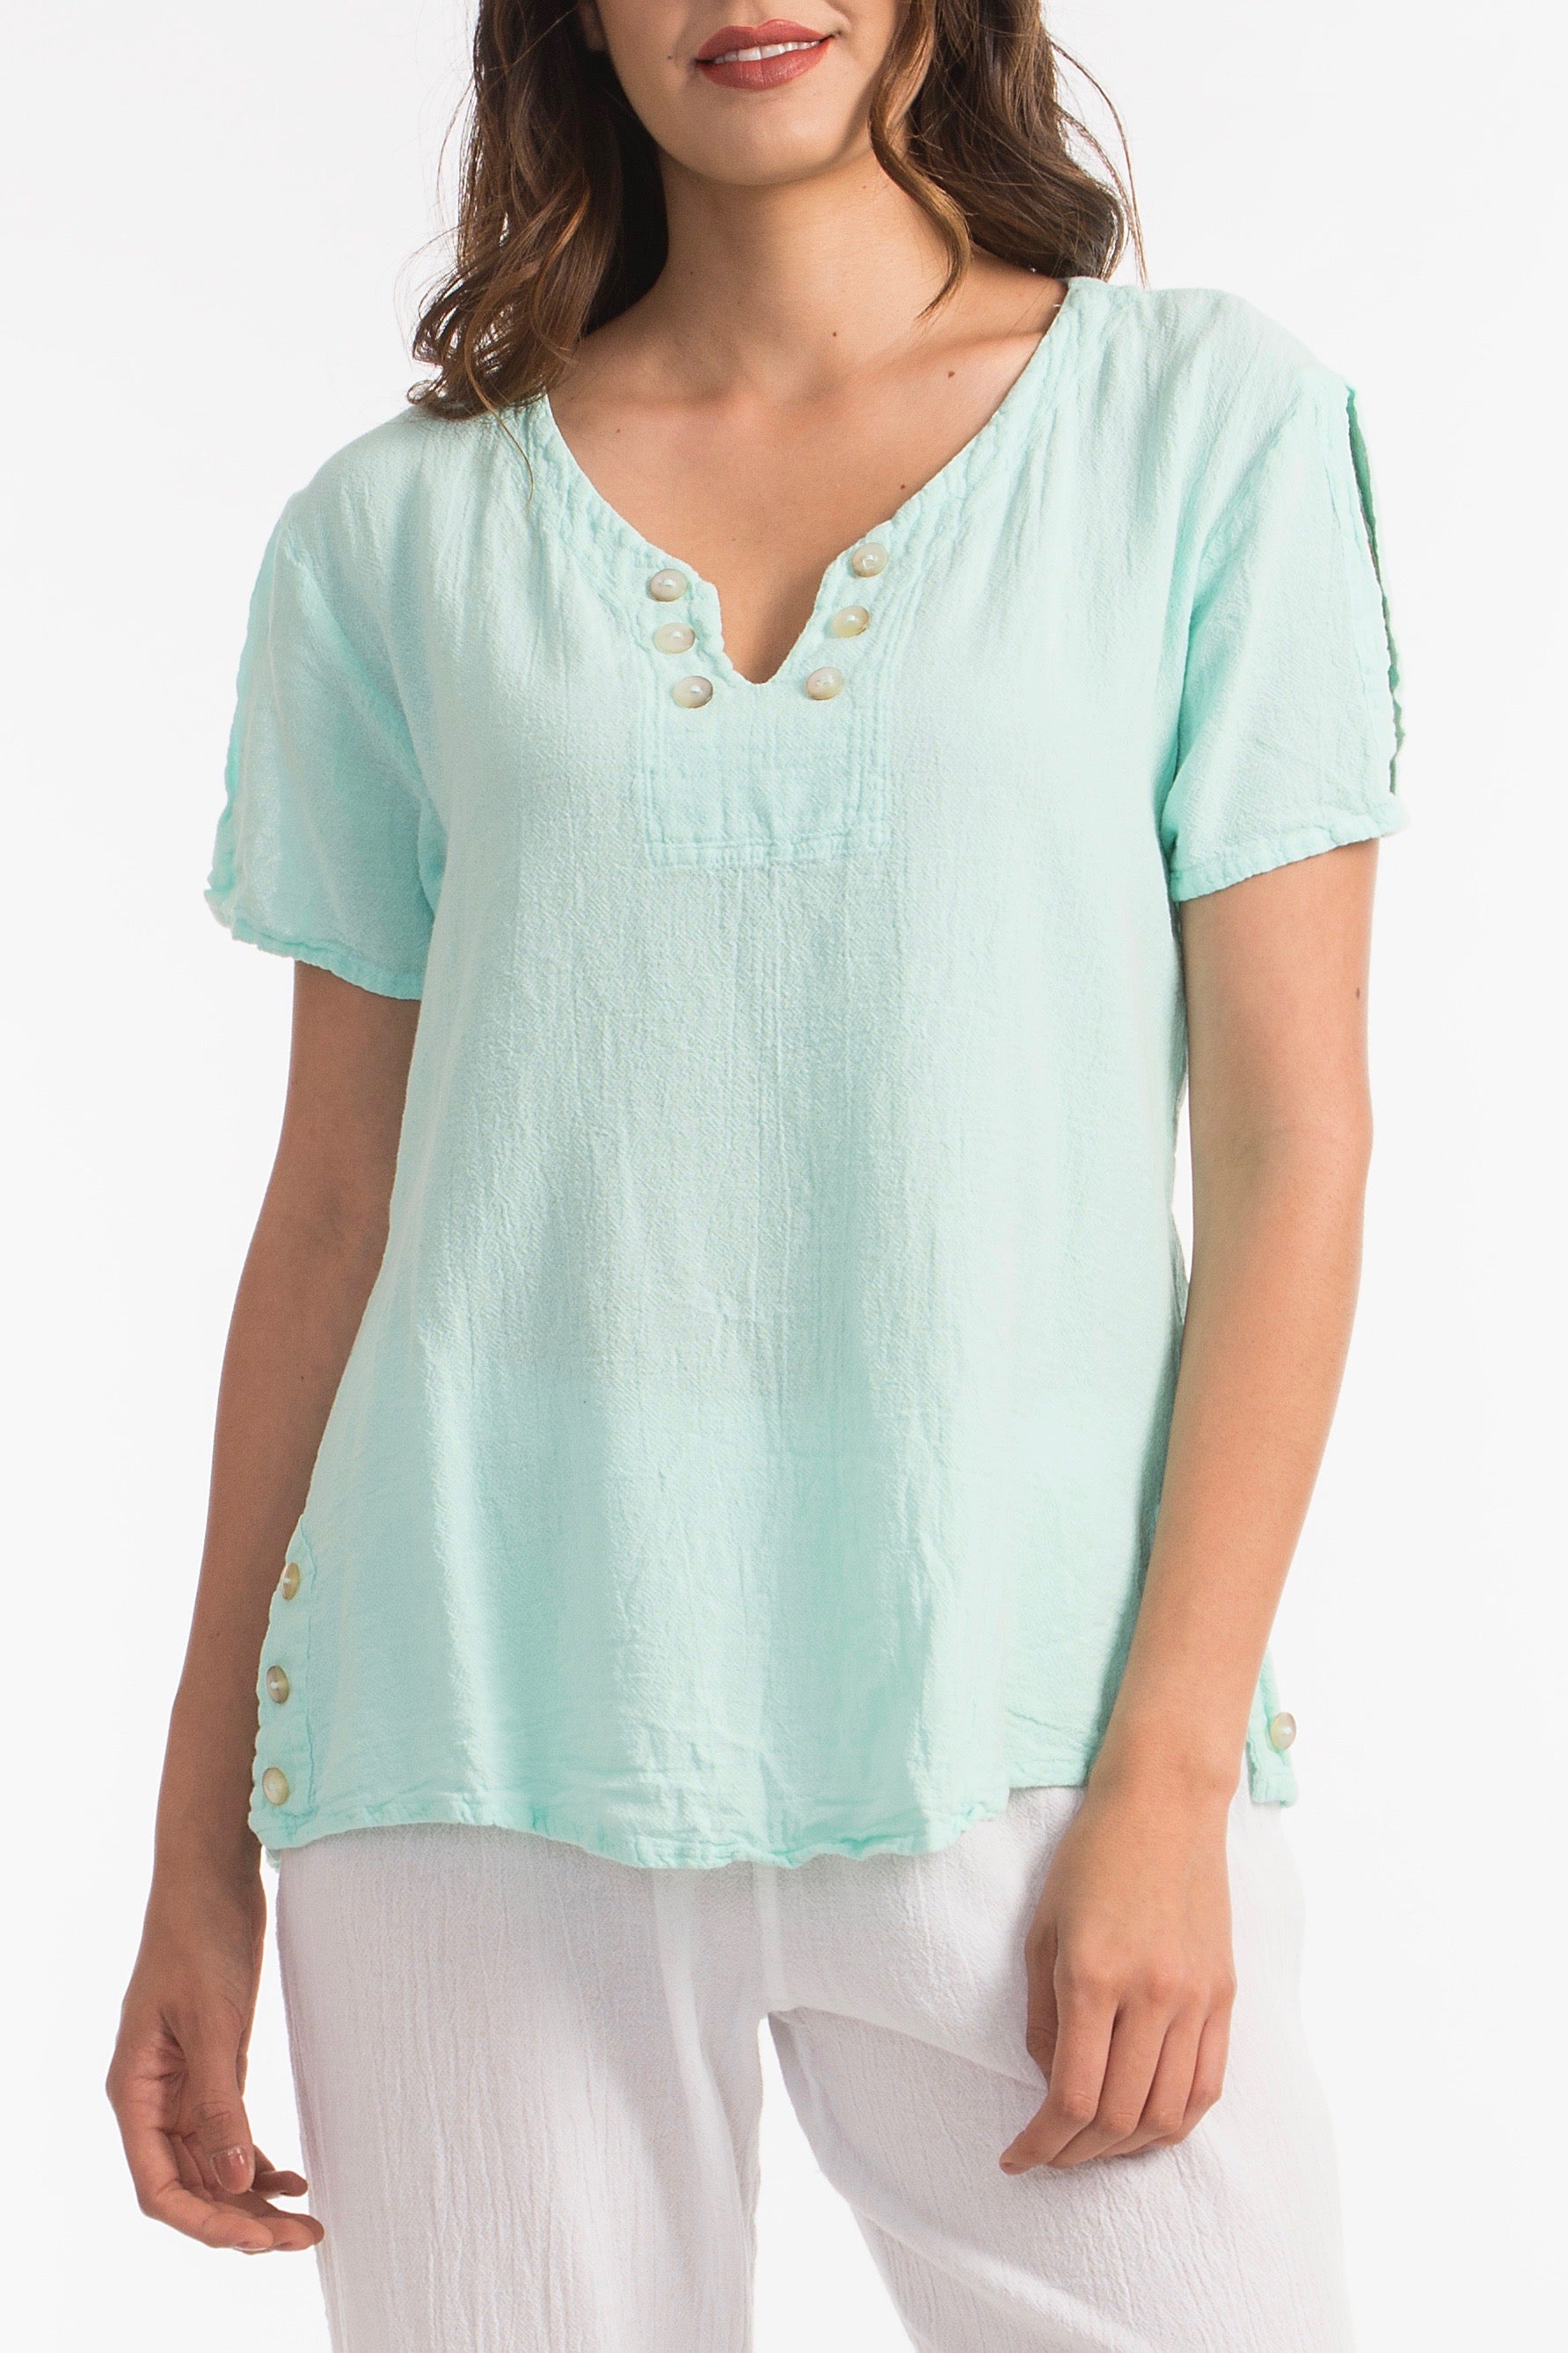 Lauren Top- Scoop Bottom with Button Details 100% Cotton Gauze Sale Colors